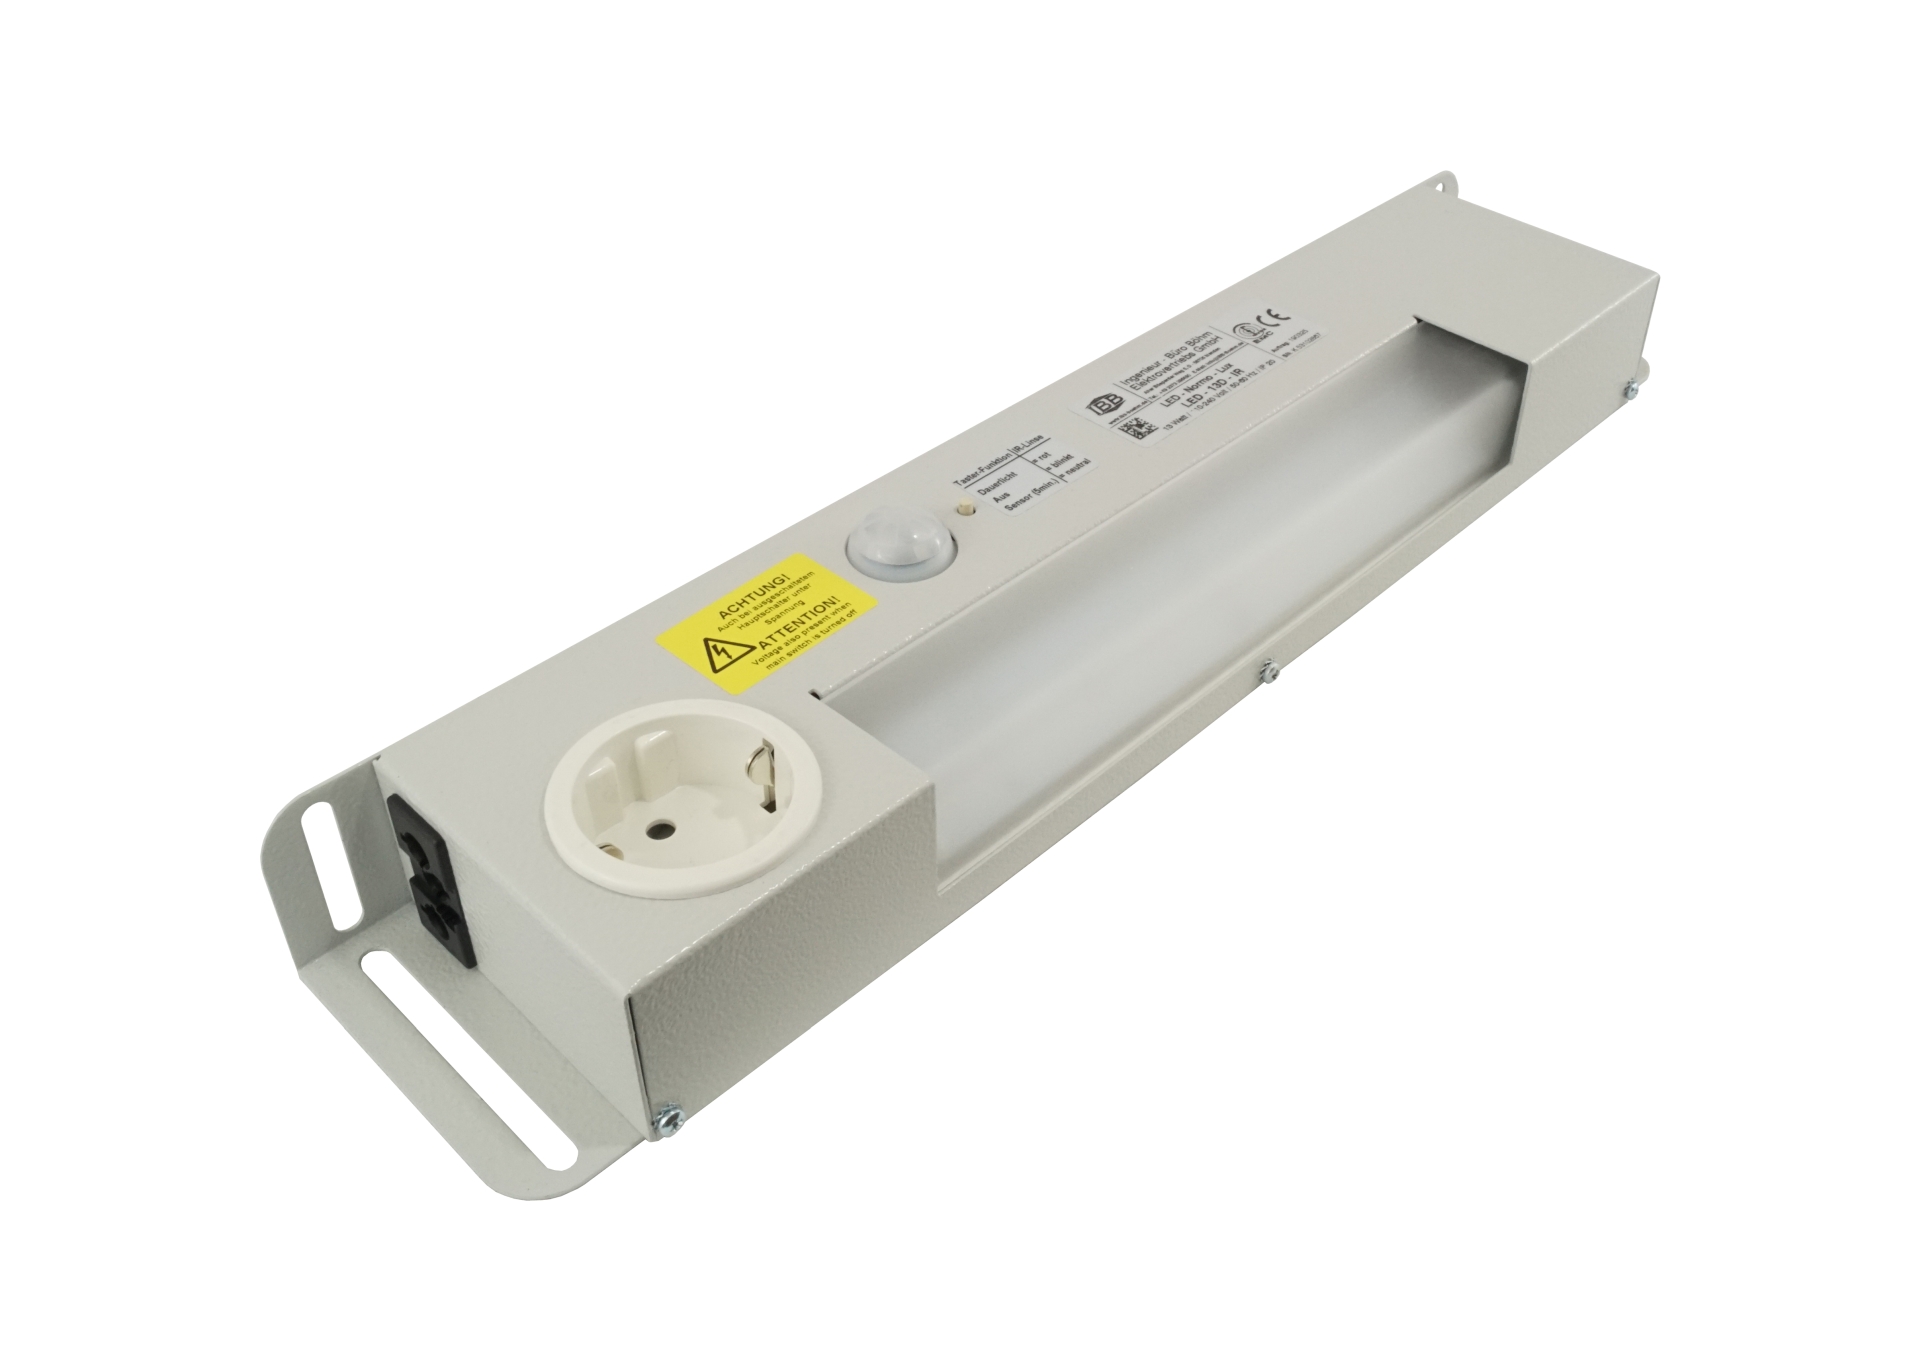 Abbildung LED Schaltschrankleuchte LED-Normo-Lux 13 Watt | Betriebsspannung: 110-240 Volt, 50-60 Hz, Infrarot-Sensor